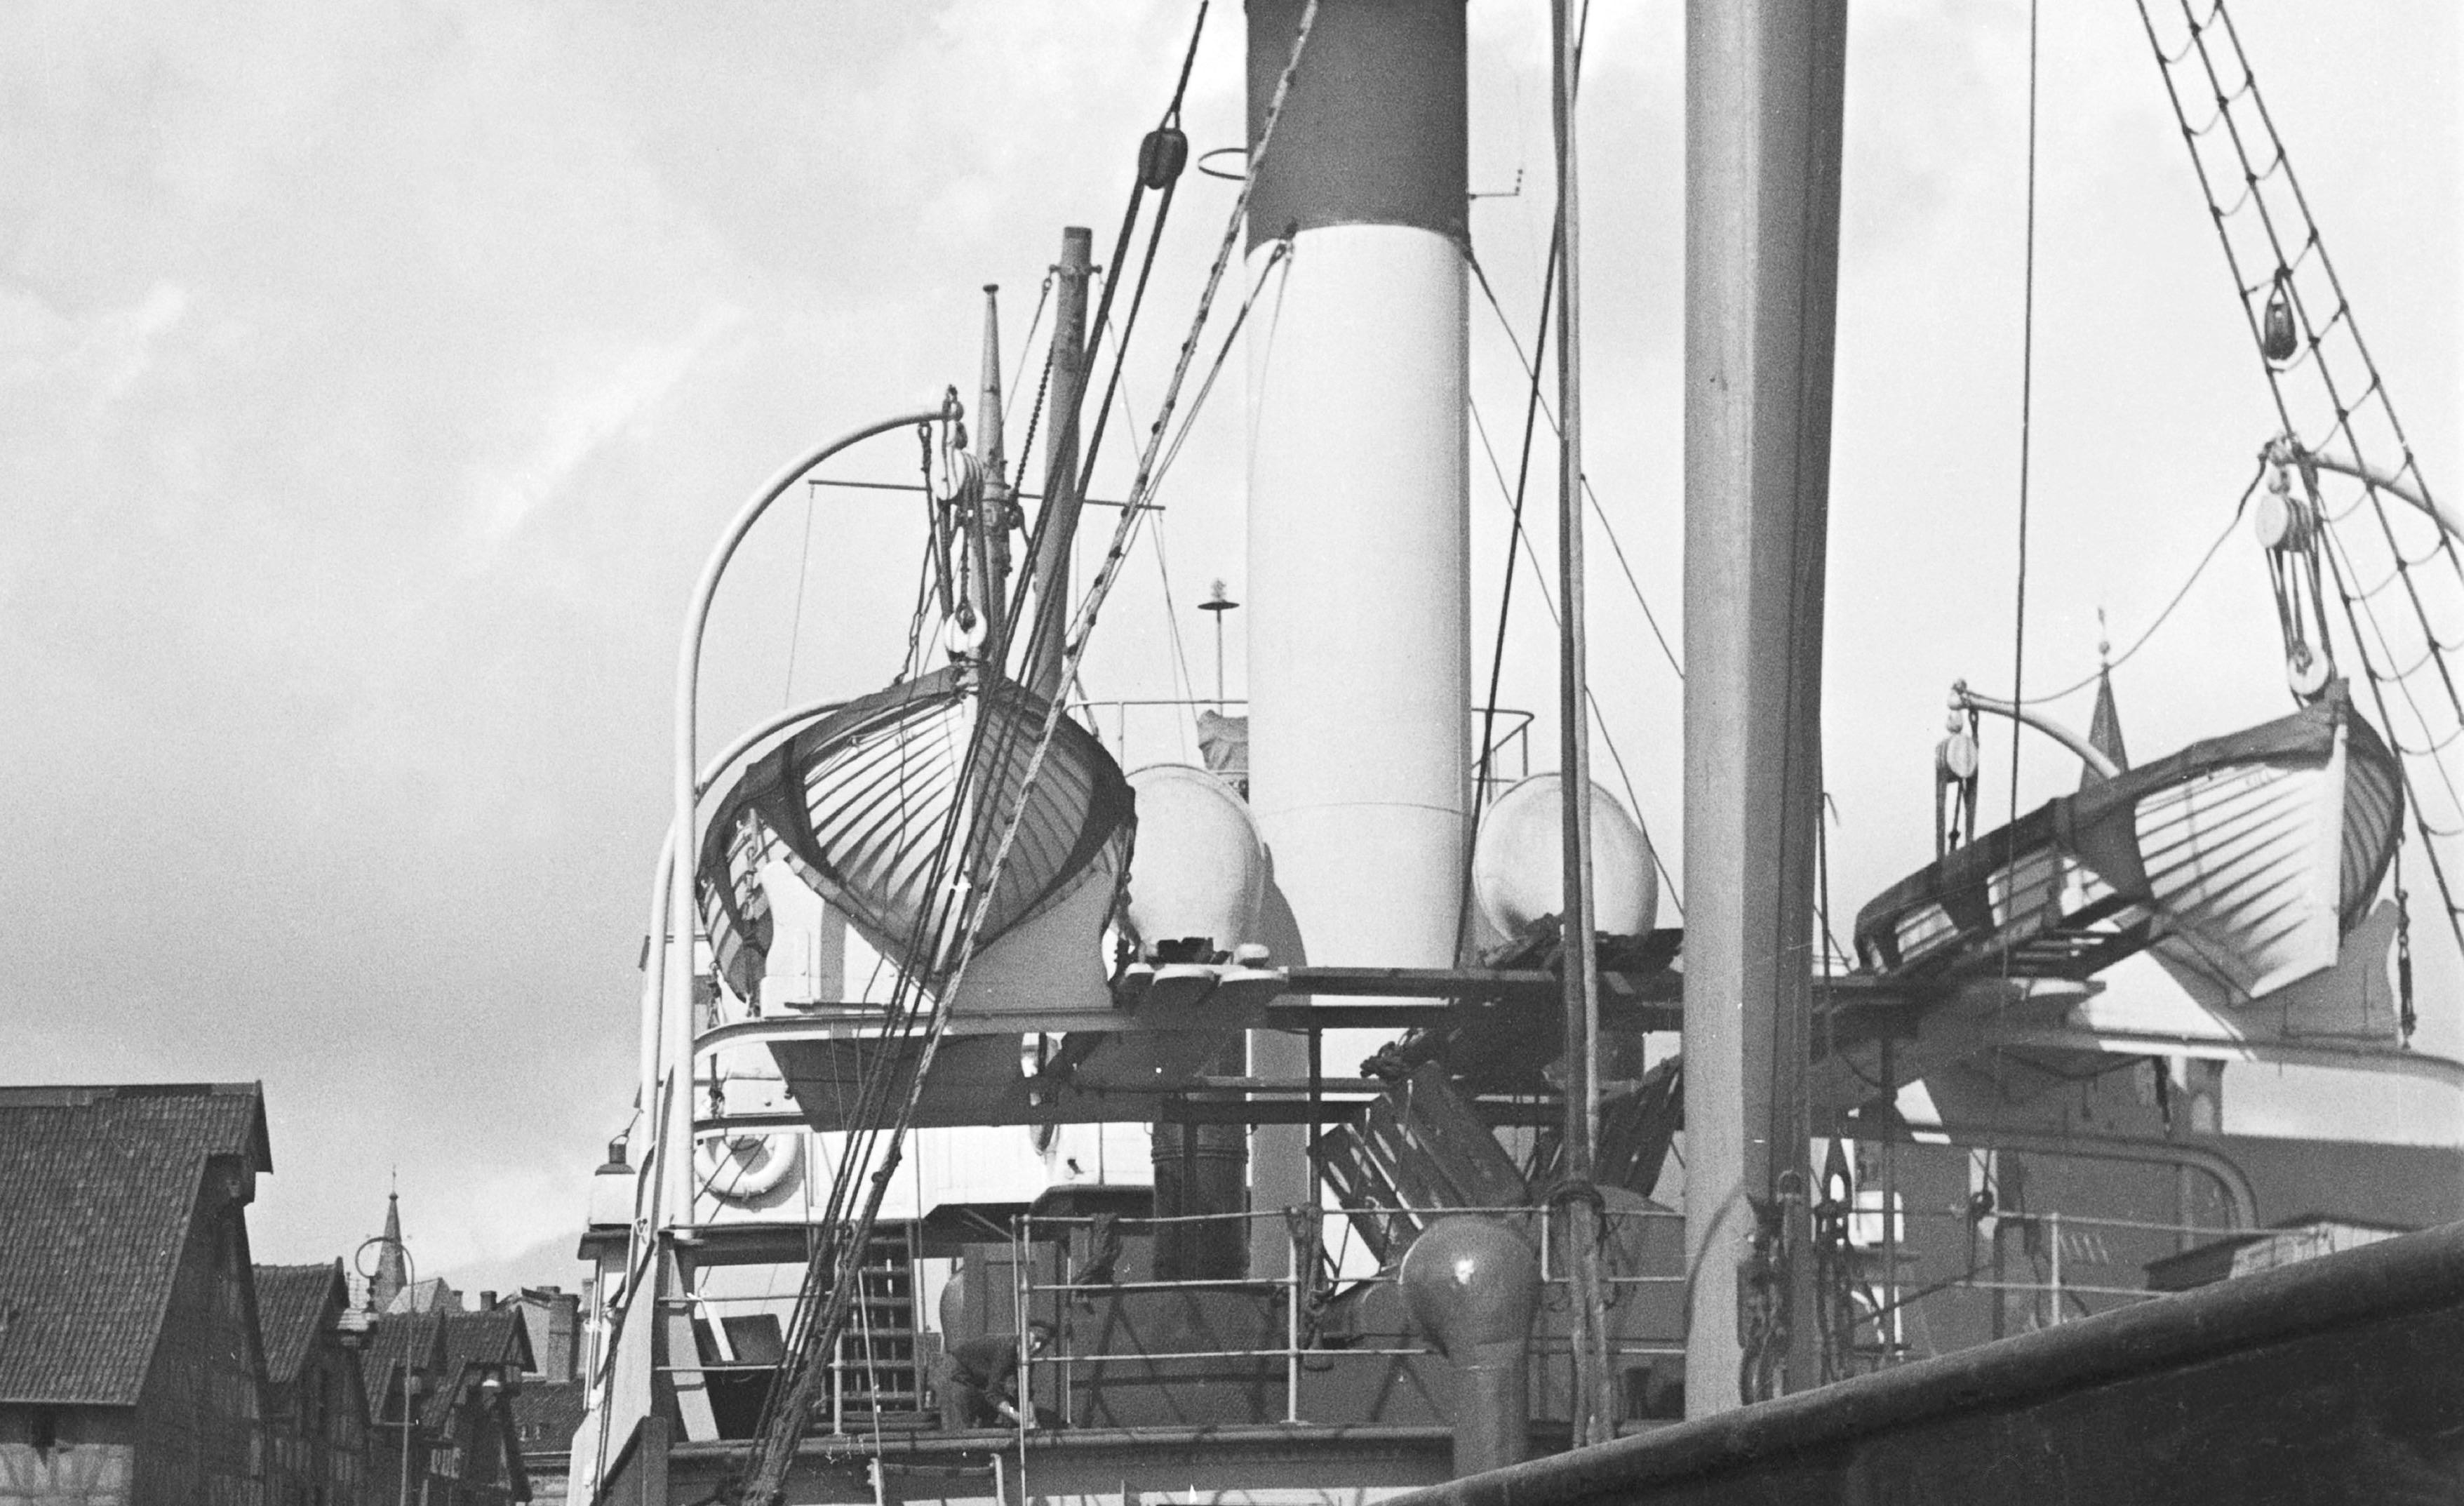 Ships at Koenigsberg harbor in East Prussia, Allemagne 1937 Imprimé ultérieurement - Moderne Photograph par Karl Heinrich Lämmel